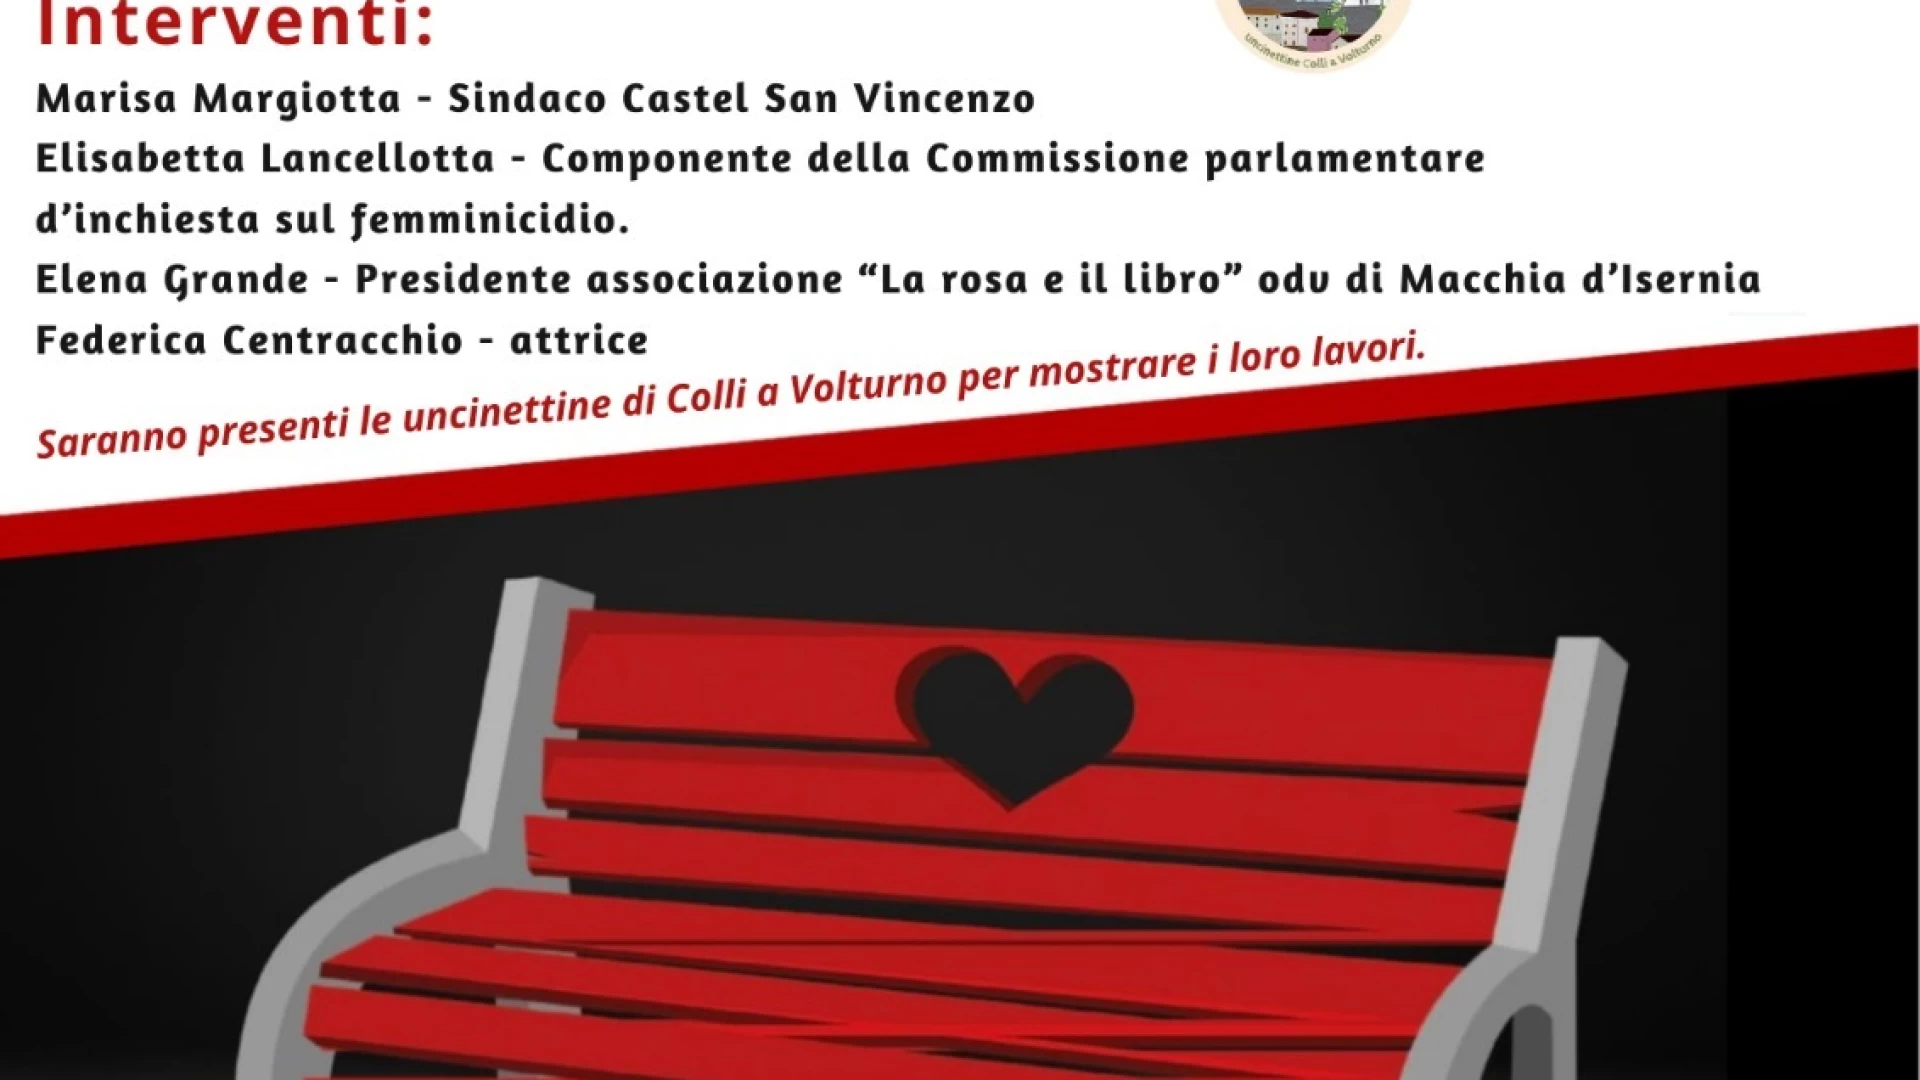 L’Associazione culturale “La Rosa e il Libro” a Castel San Vincenzo per l’installazione di una panchina rossa.